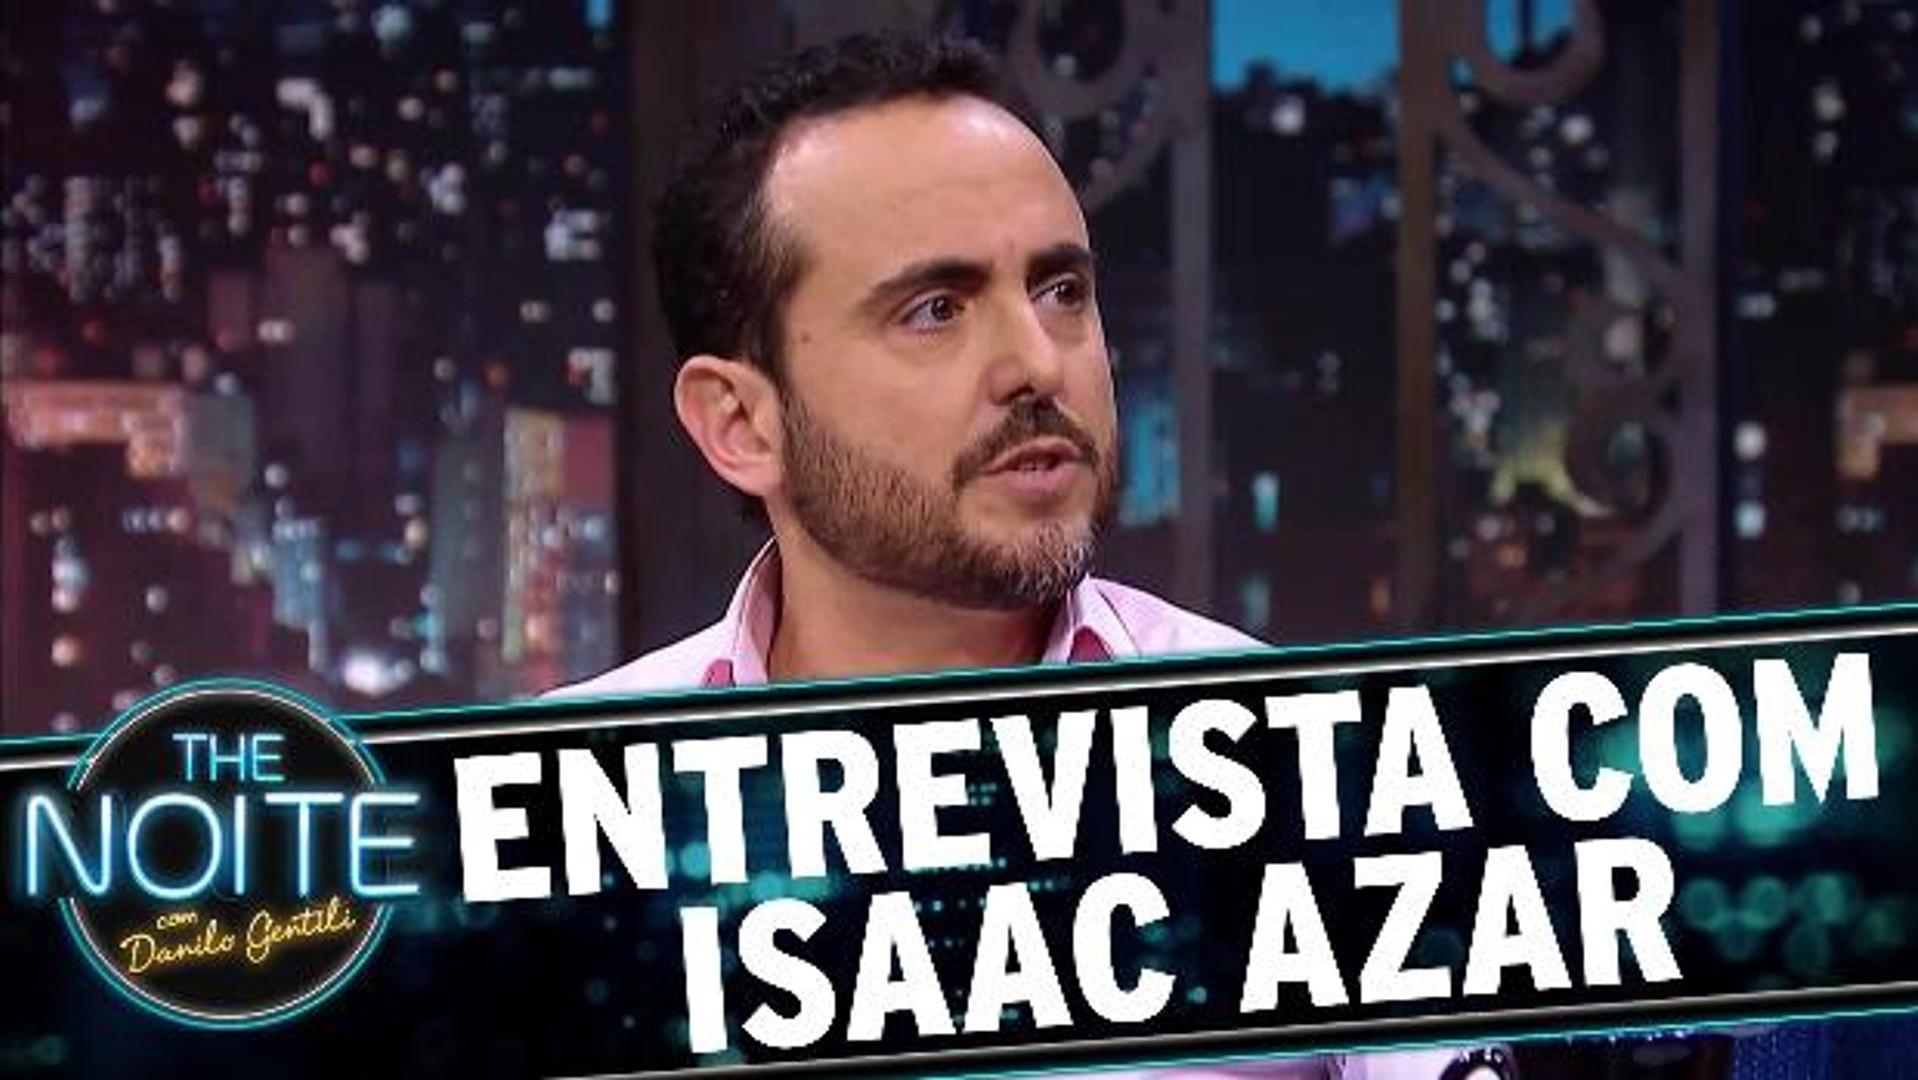 Entrevista com Isaac Azar - Vídeo Dailymotion